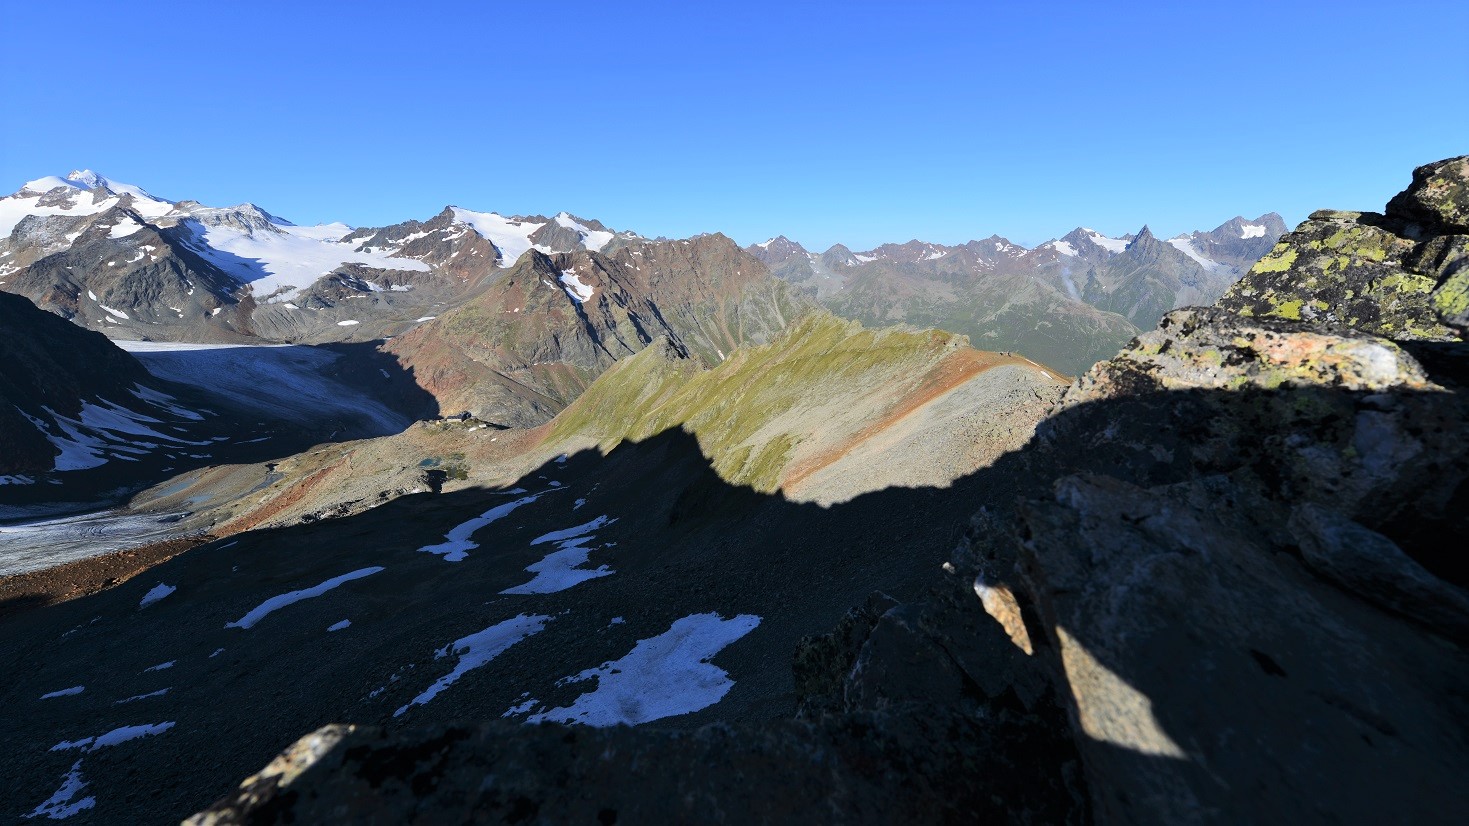 Links im Bild die Ötztaler Alpen mit der Wildspitze am oberen linken Bildrand